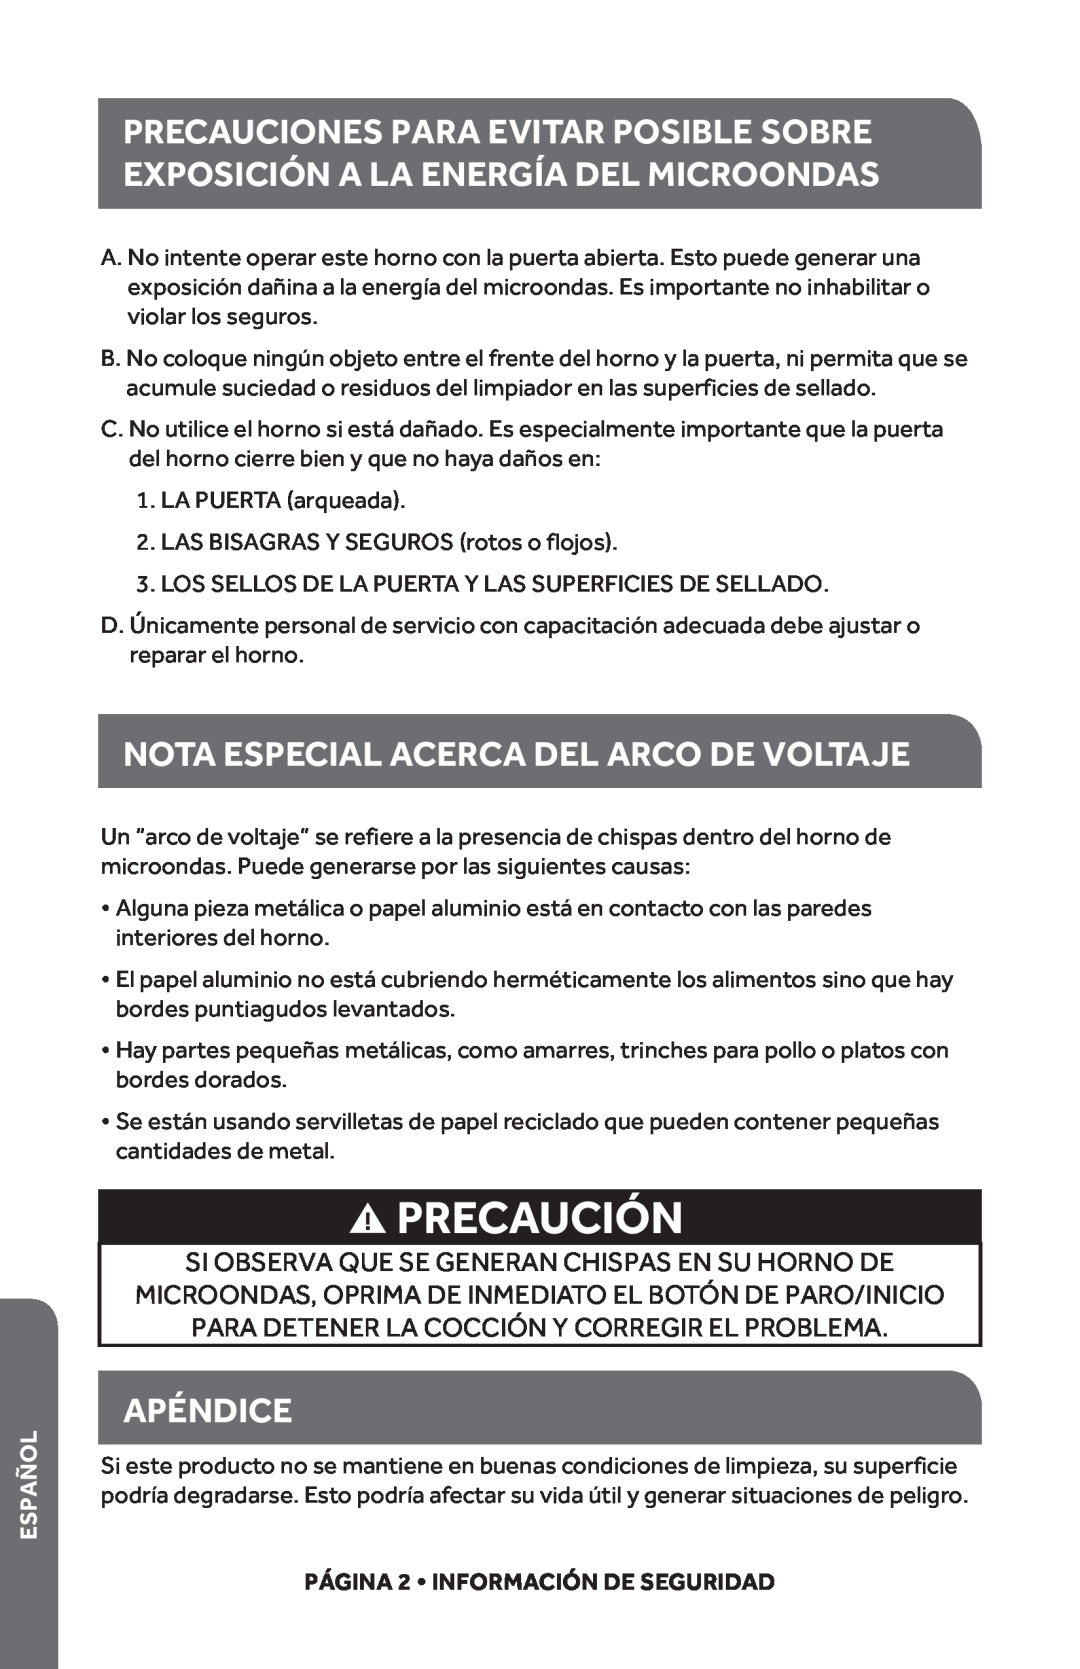 Haier HMC1035SESS user manual Precaución, Nota Especial Acerca Del Arco De Voltaje, Apéndice, Español 